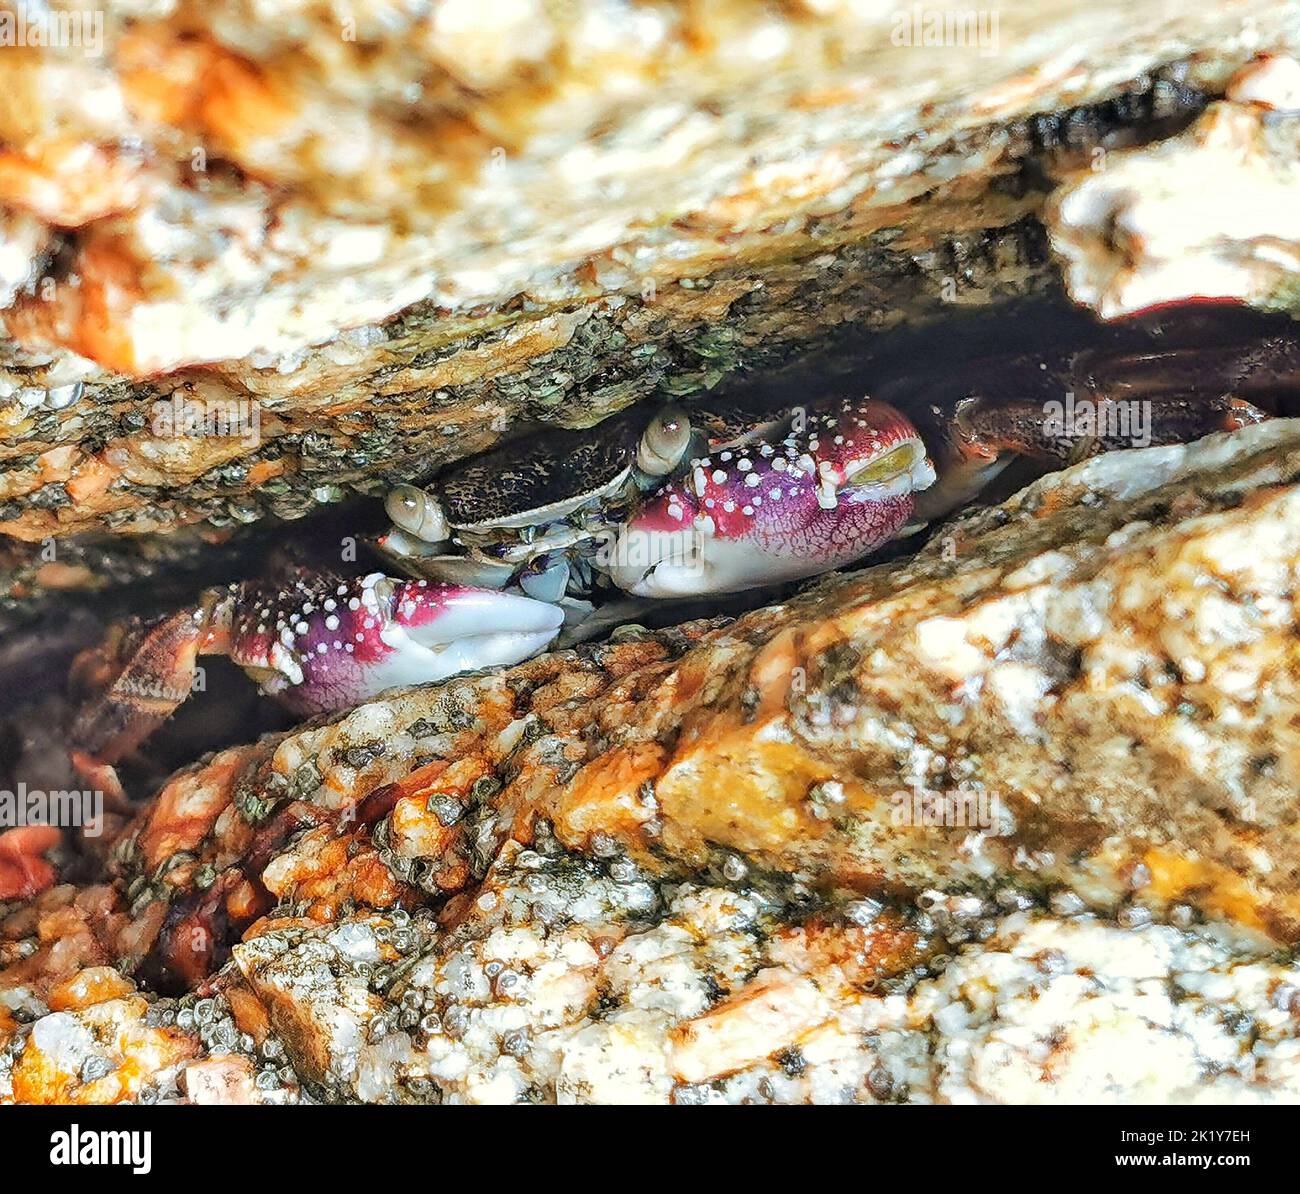 wild crab hidden in the rocks Stock Photo